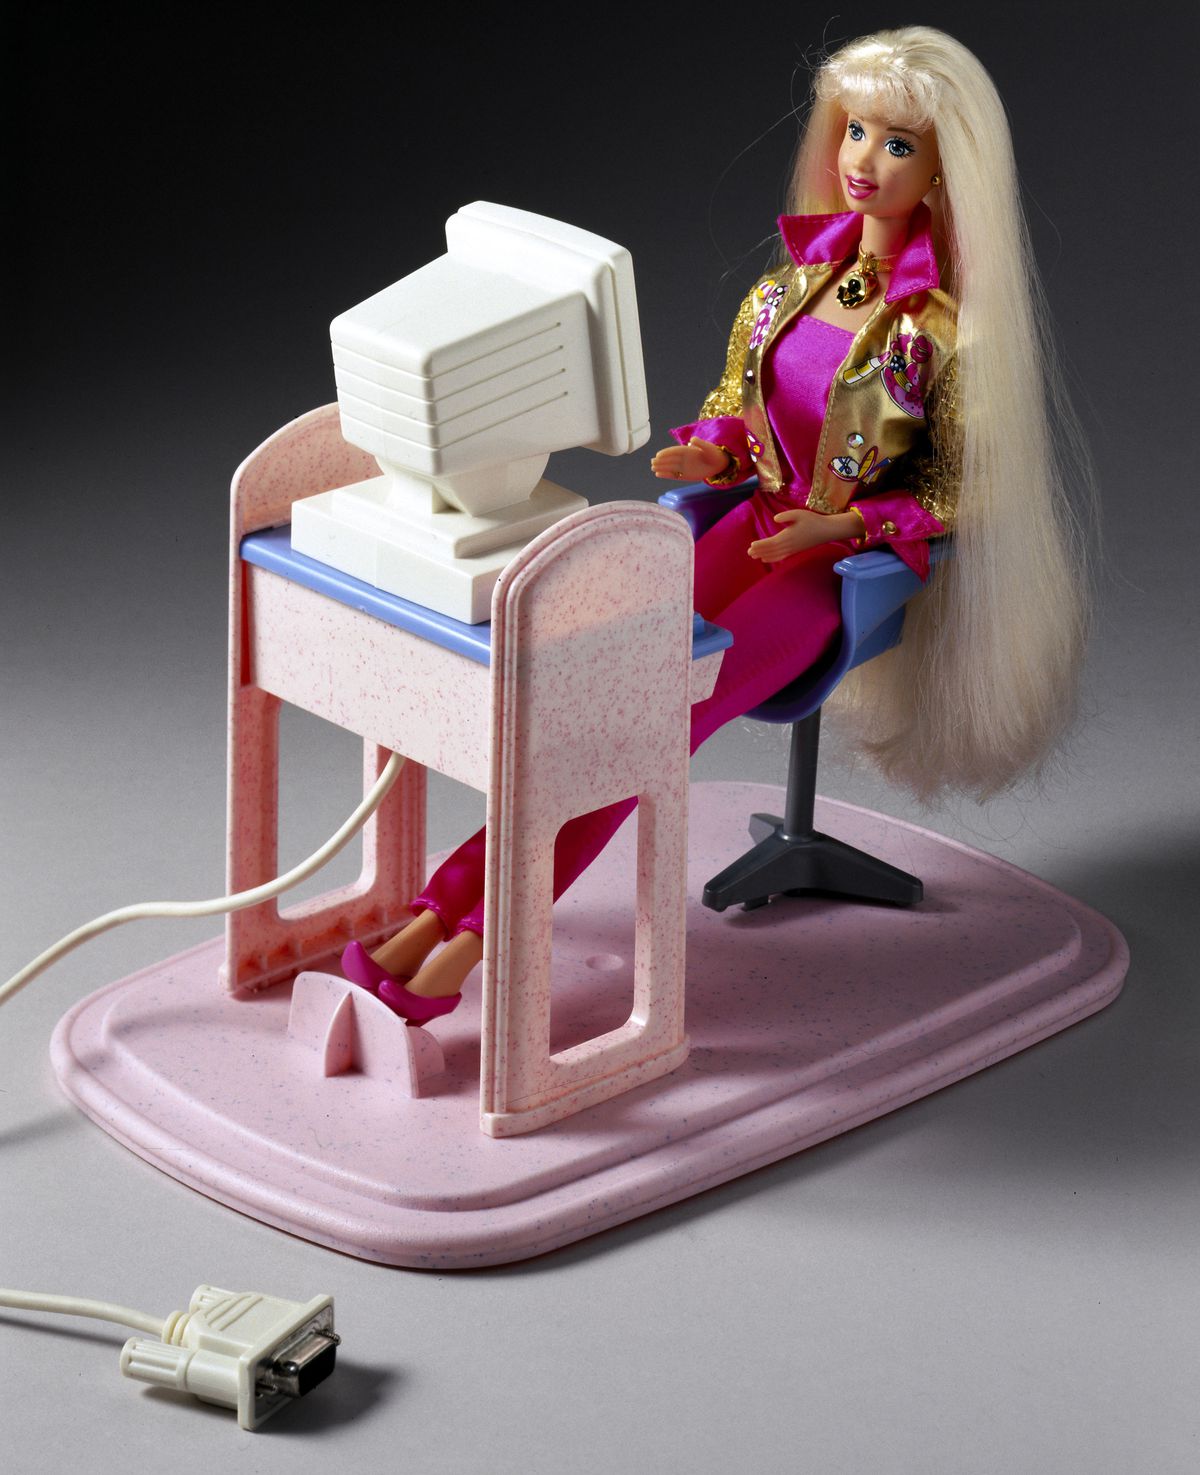 私と話す！ バービー人形、米国、1997 年、コンピューターを使用。 彼女の機械からコードが突き出ています。